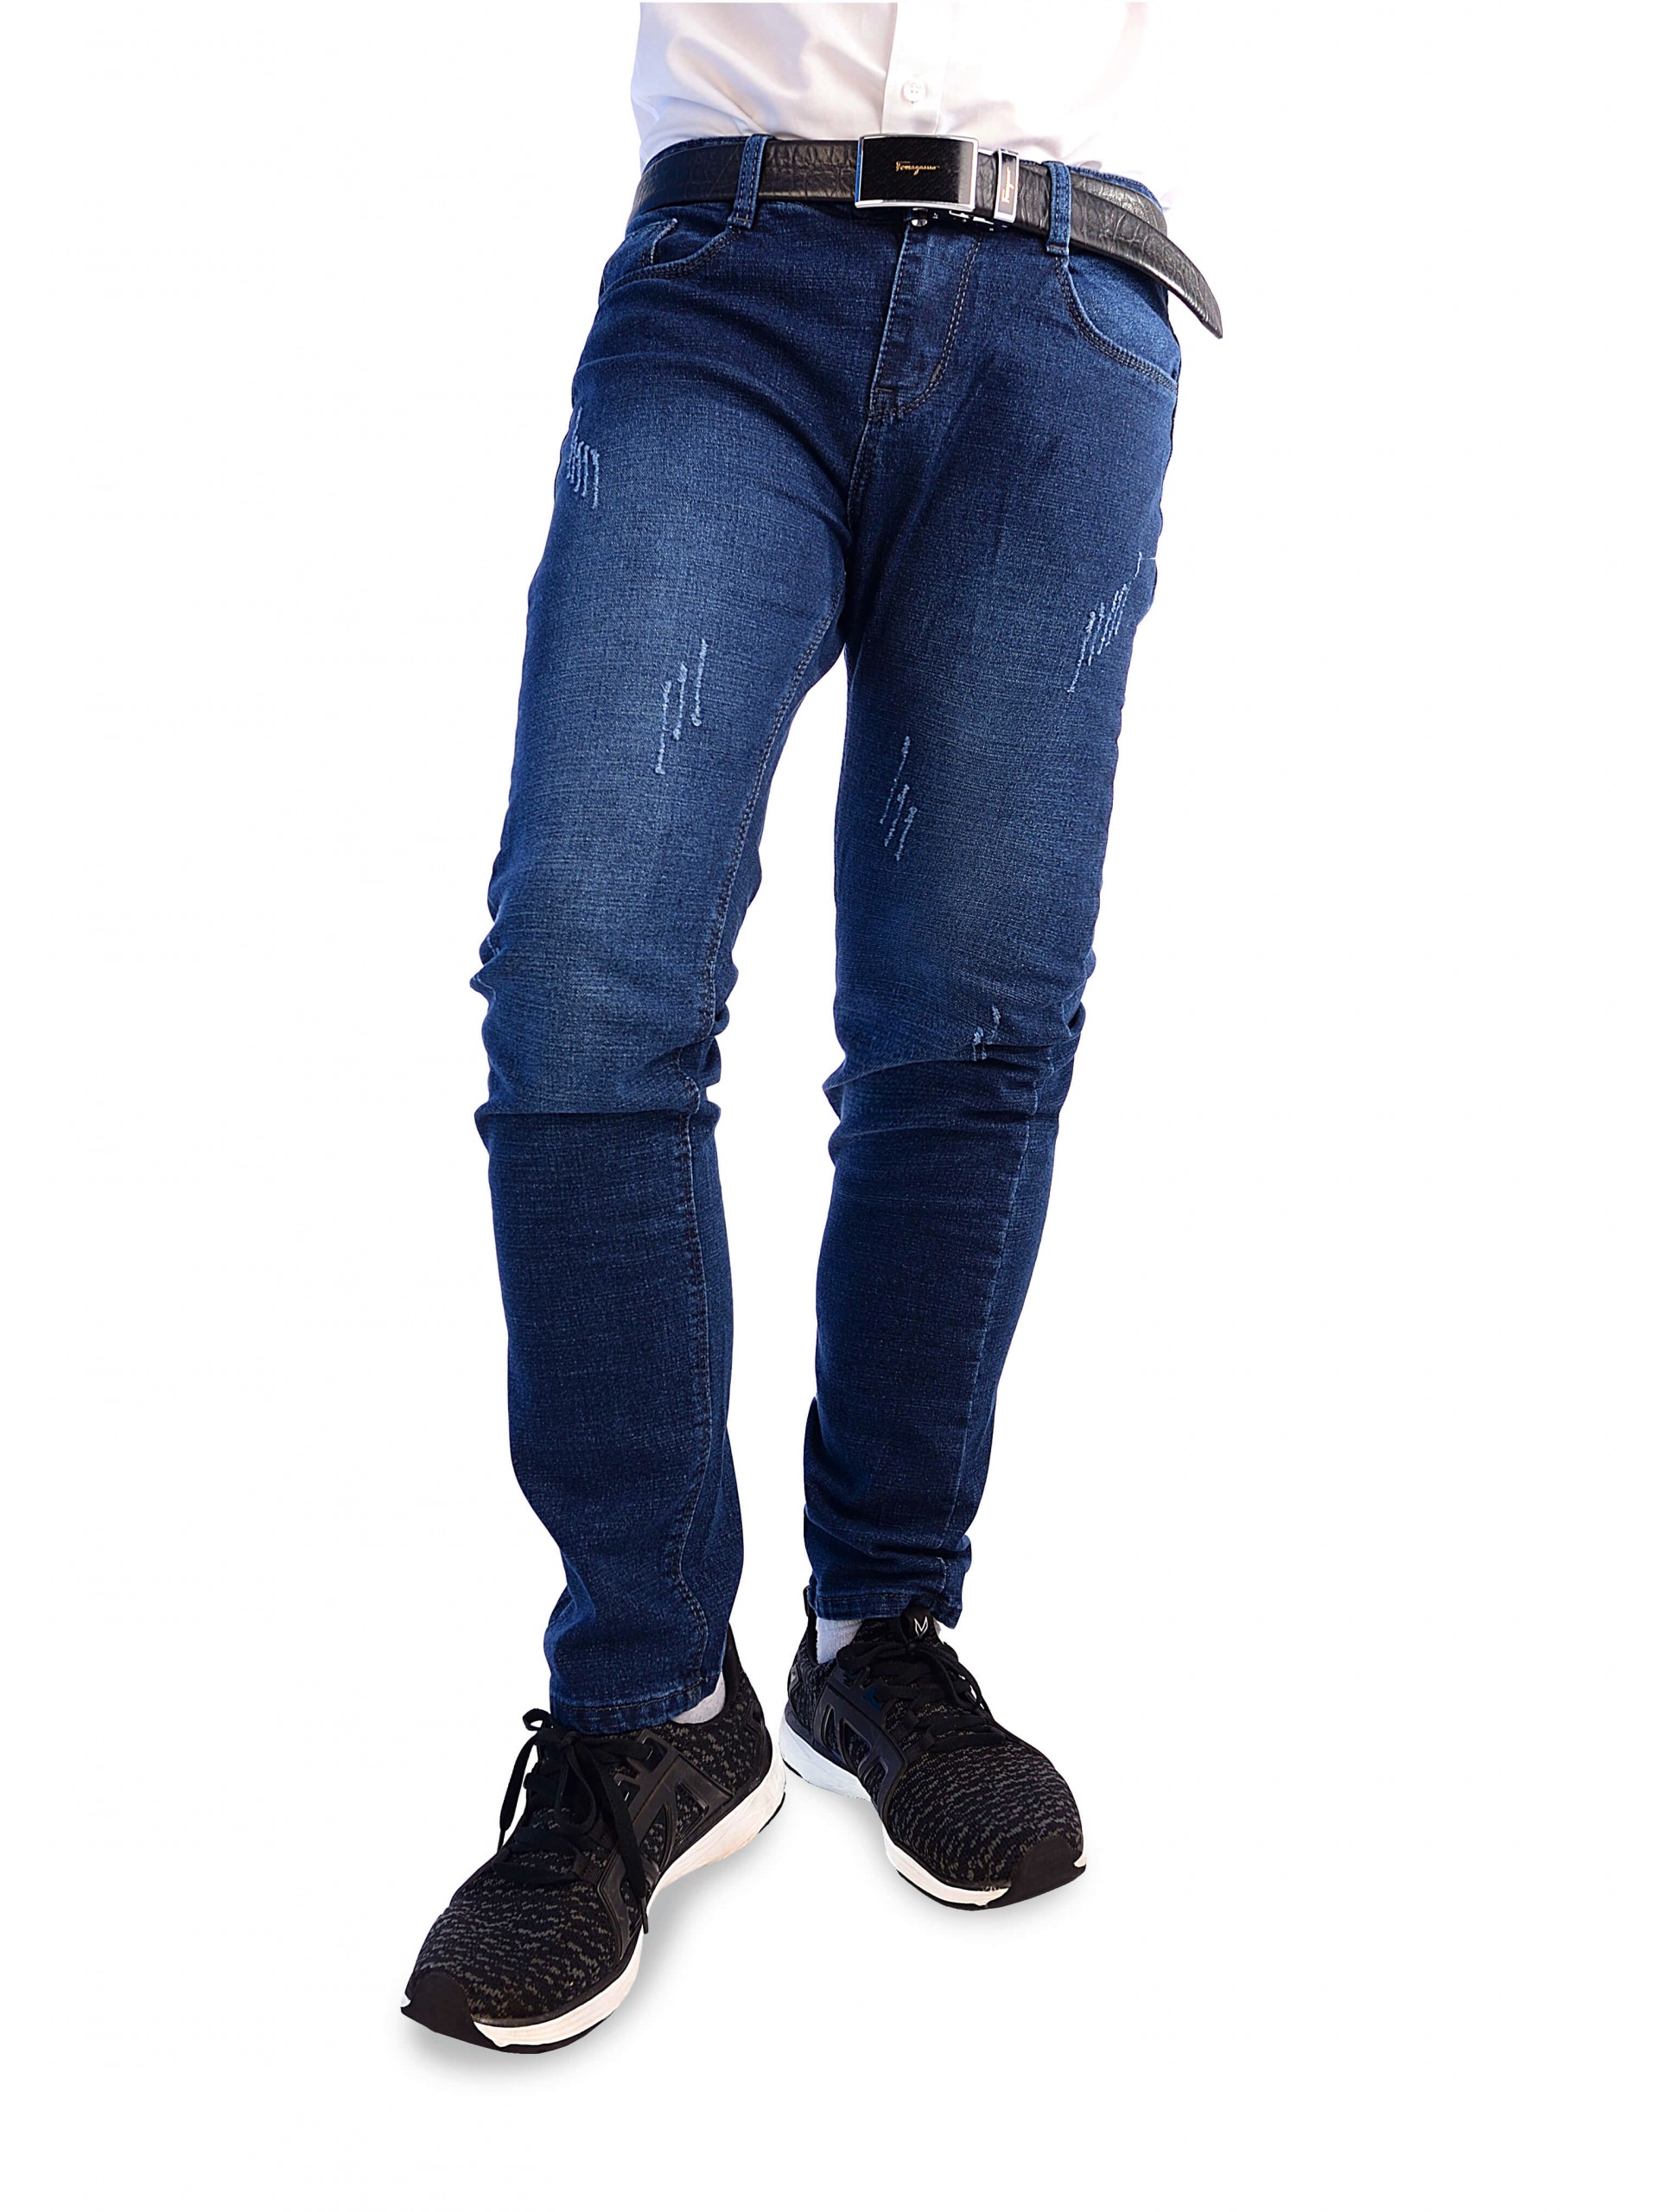 Mẫu quần jeans ống côn mới nhất cho nam